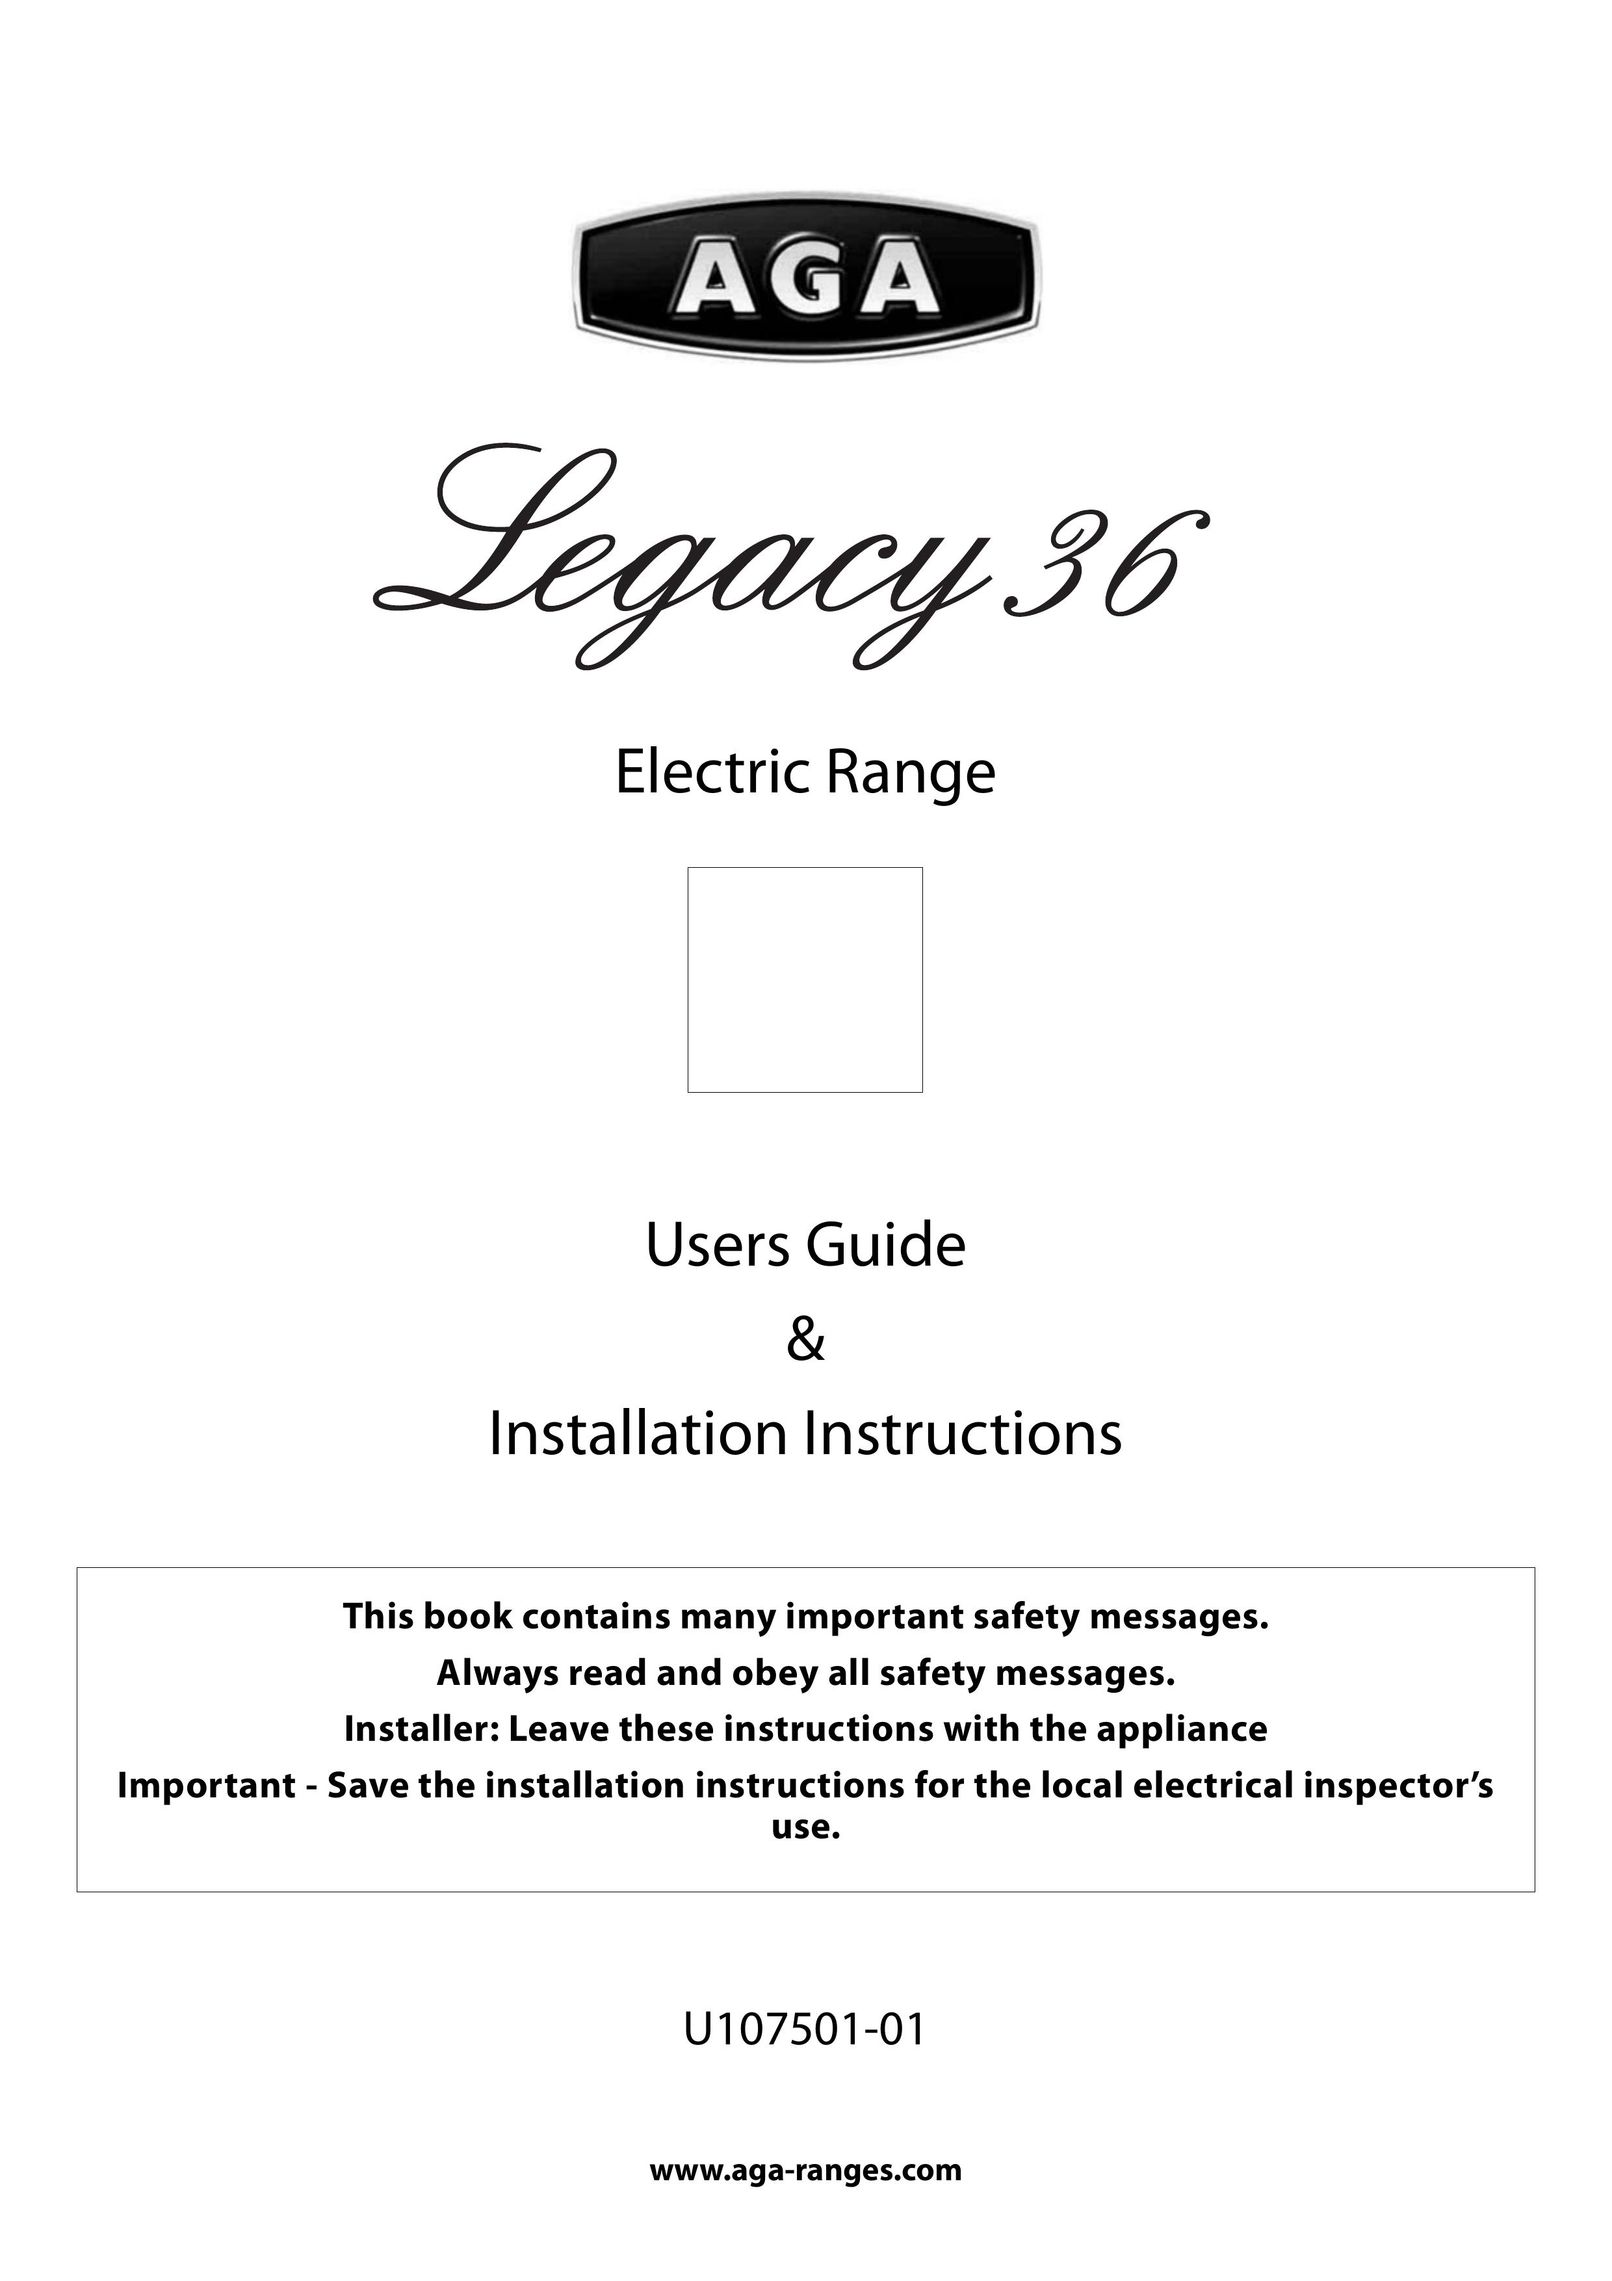 Aga Ranges U107501-01 Range User Manual